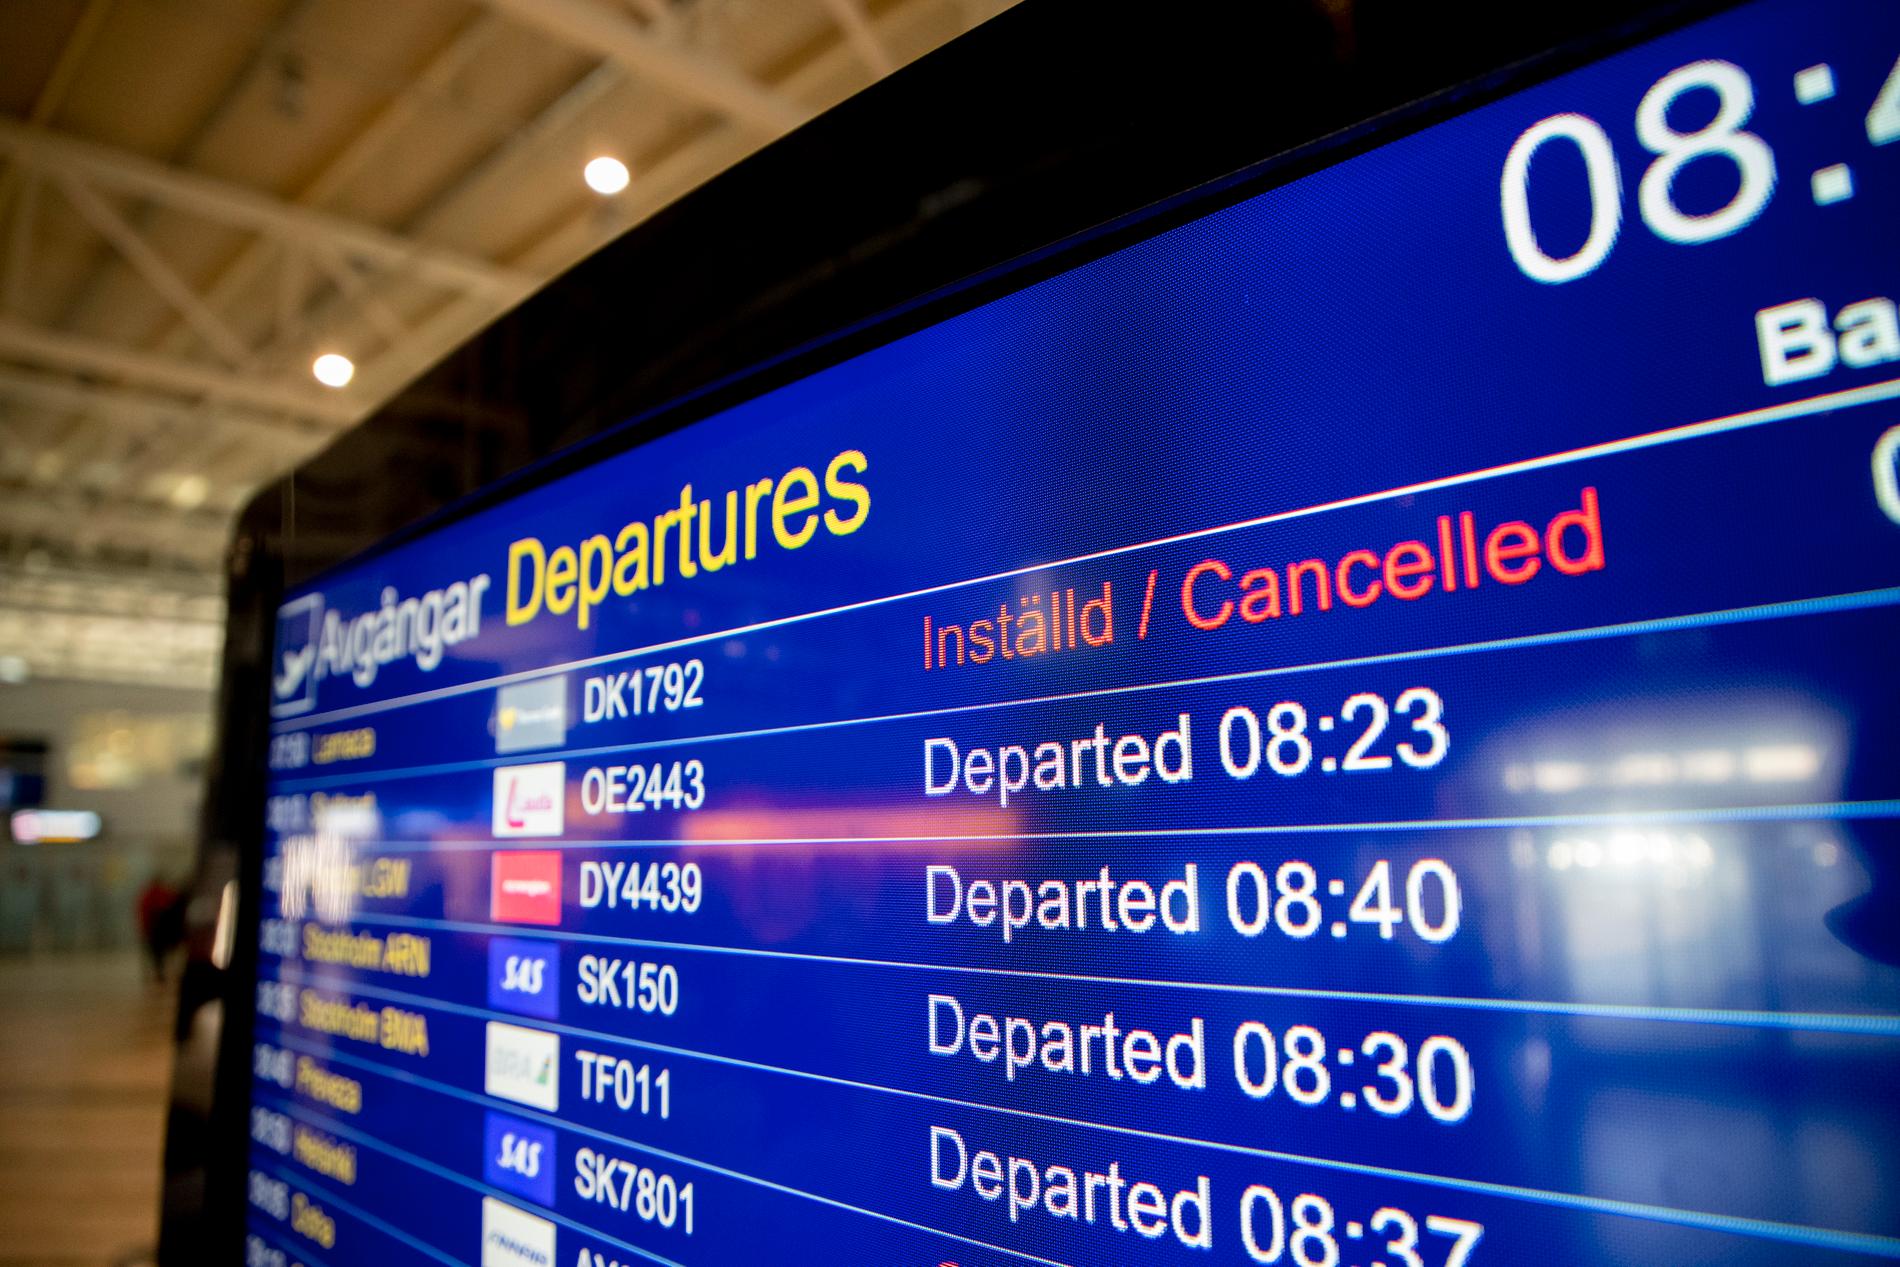 Inställda flighter på Landvetter flygplats pga att den brittiska resejätten Thomas Cook, som äger Ving, försatts i konkurs.